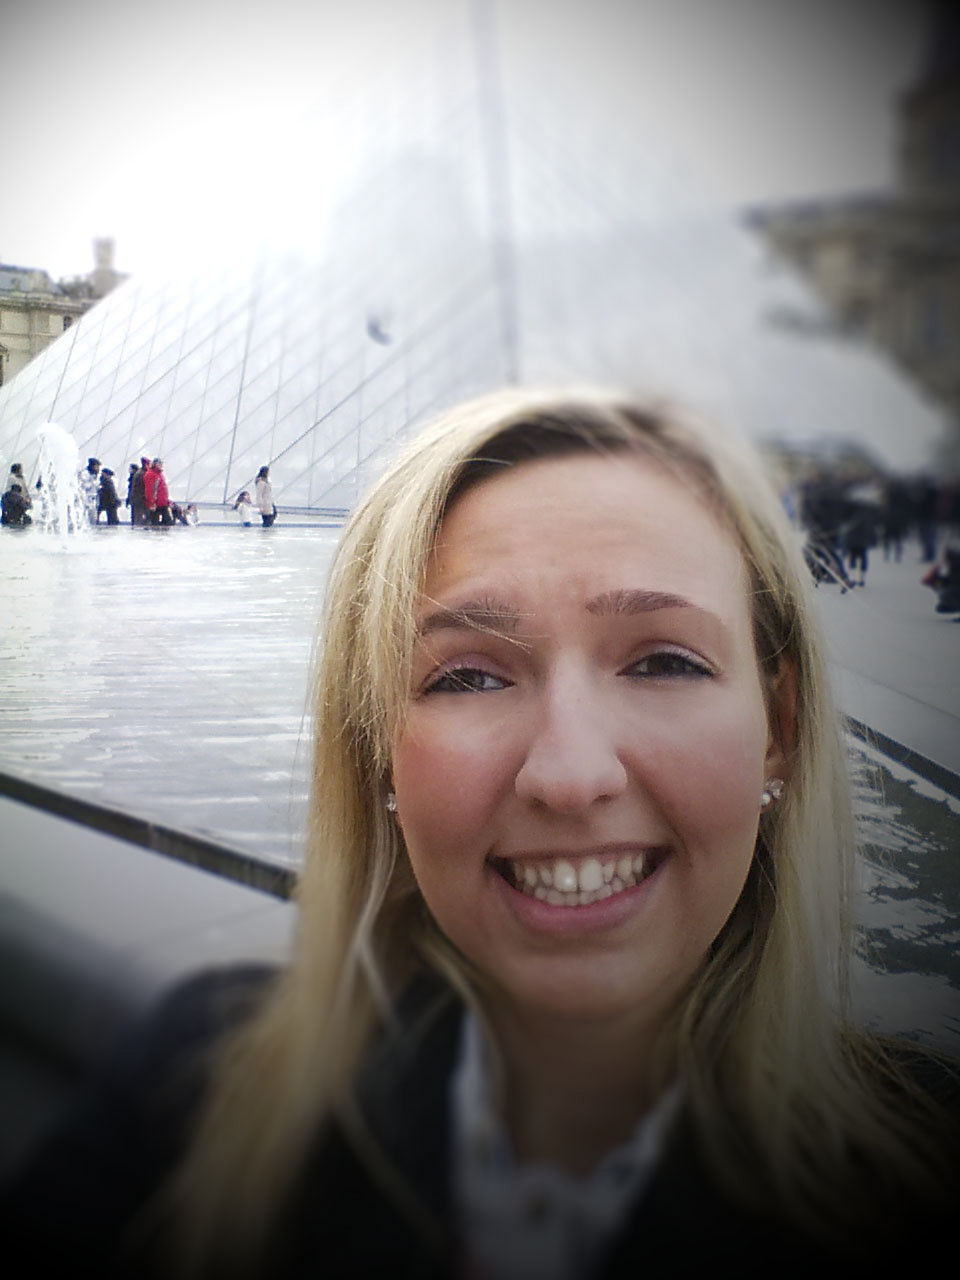 Paris louvre selfie retouch photoshop